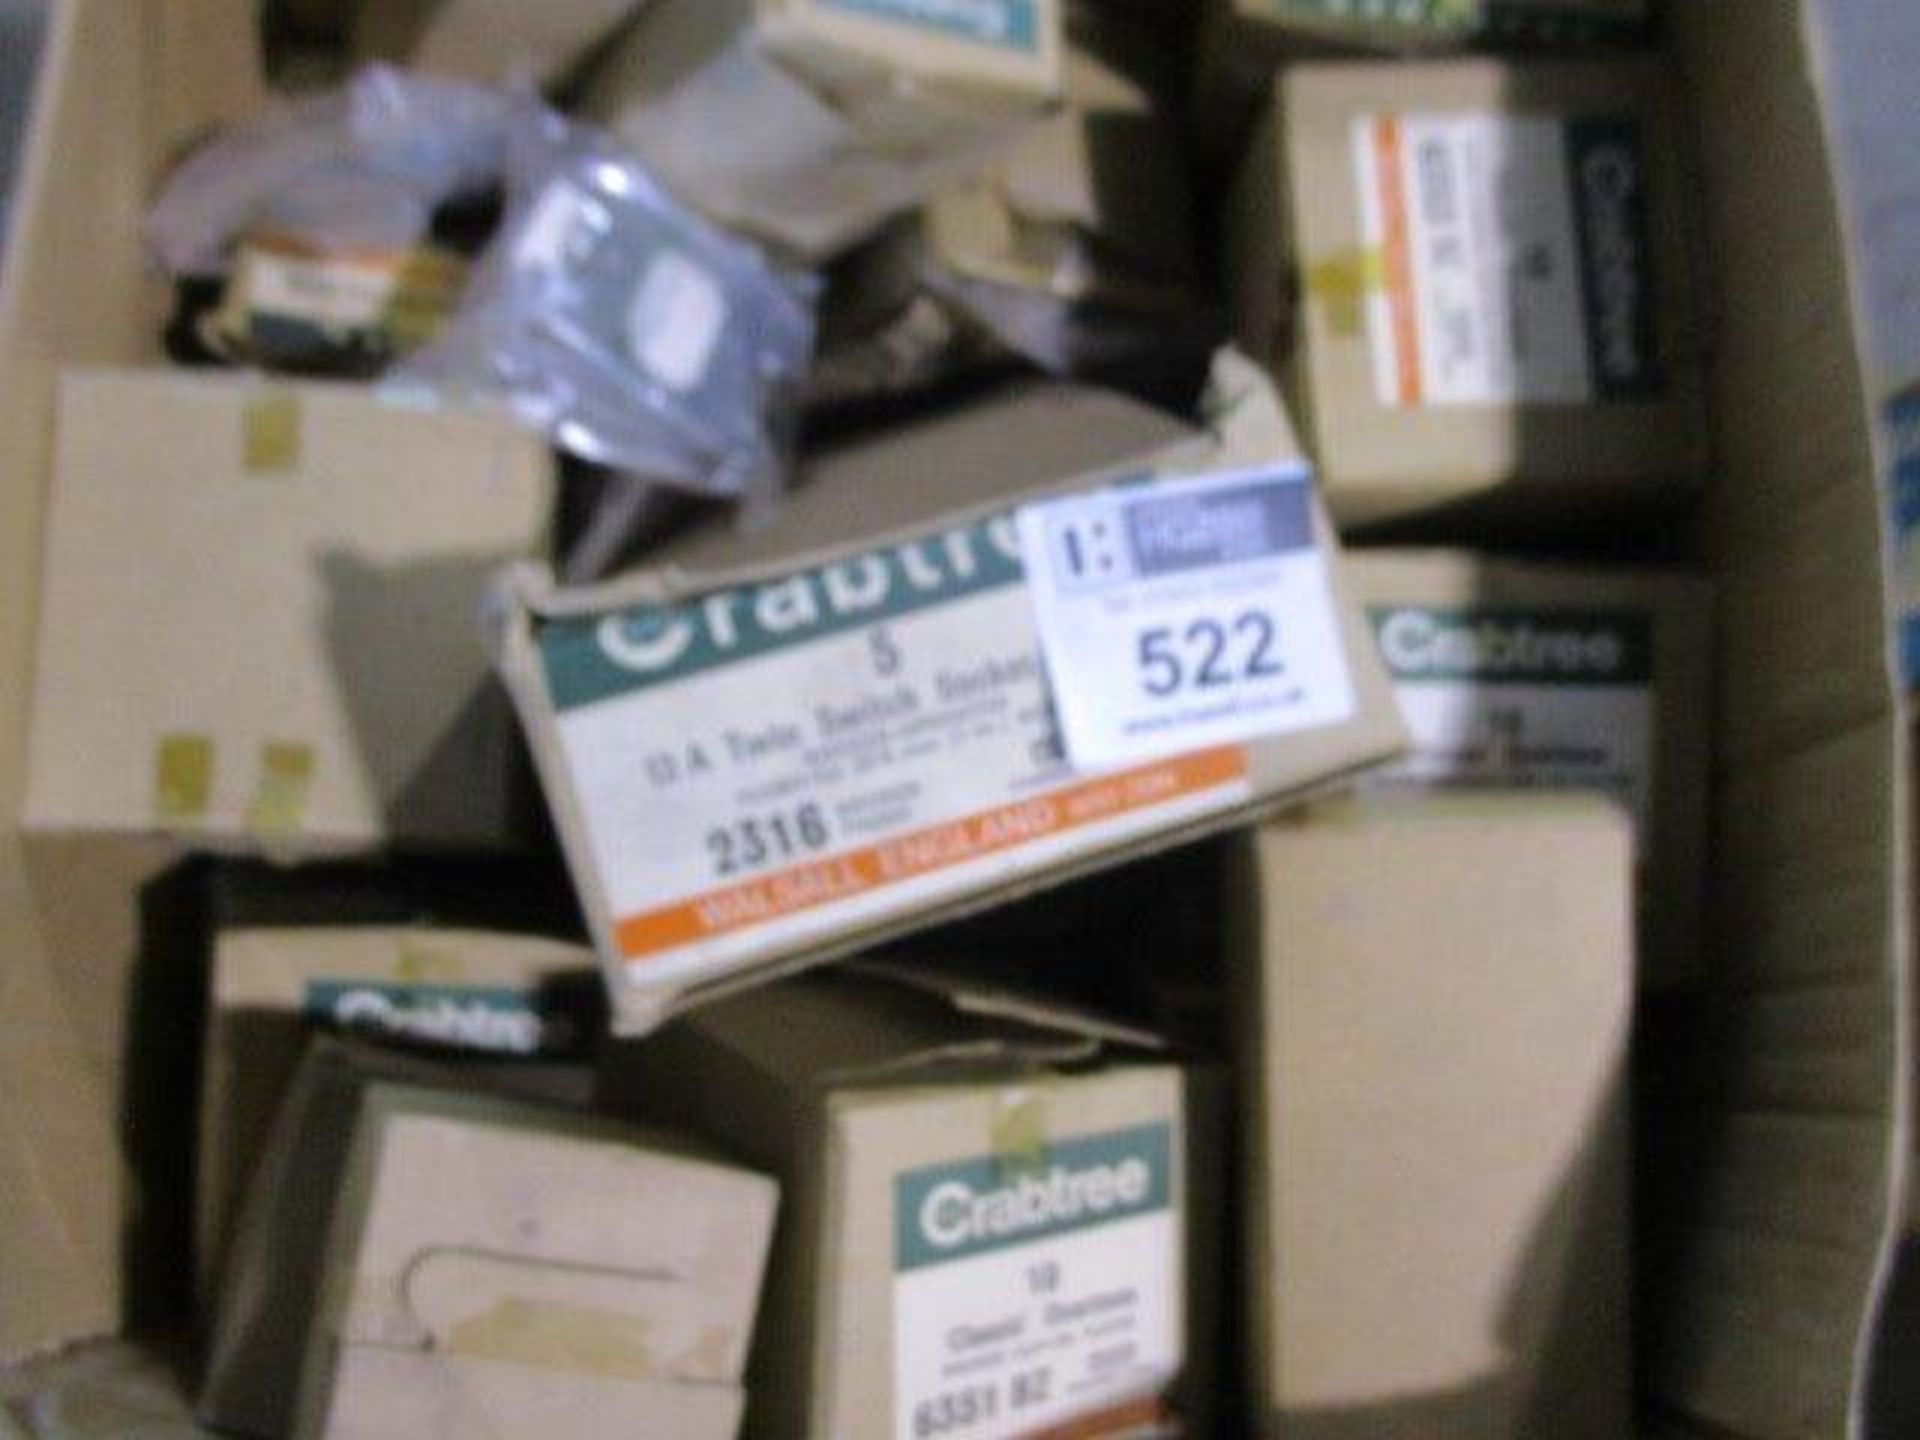 BOX OF MIXED CRABTREE RCCB